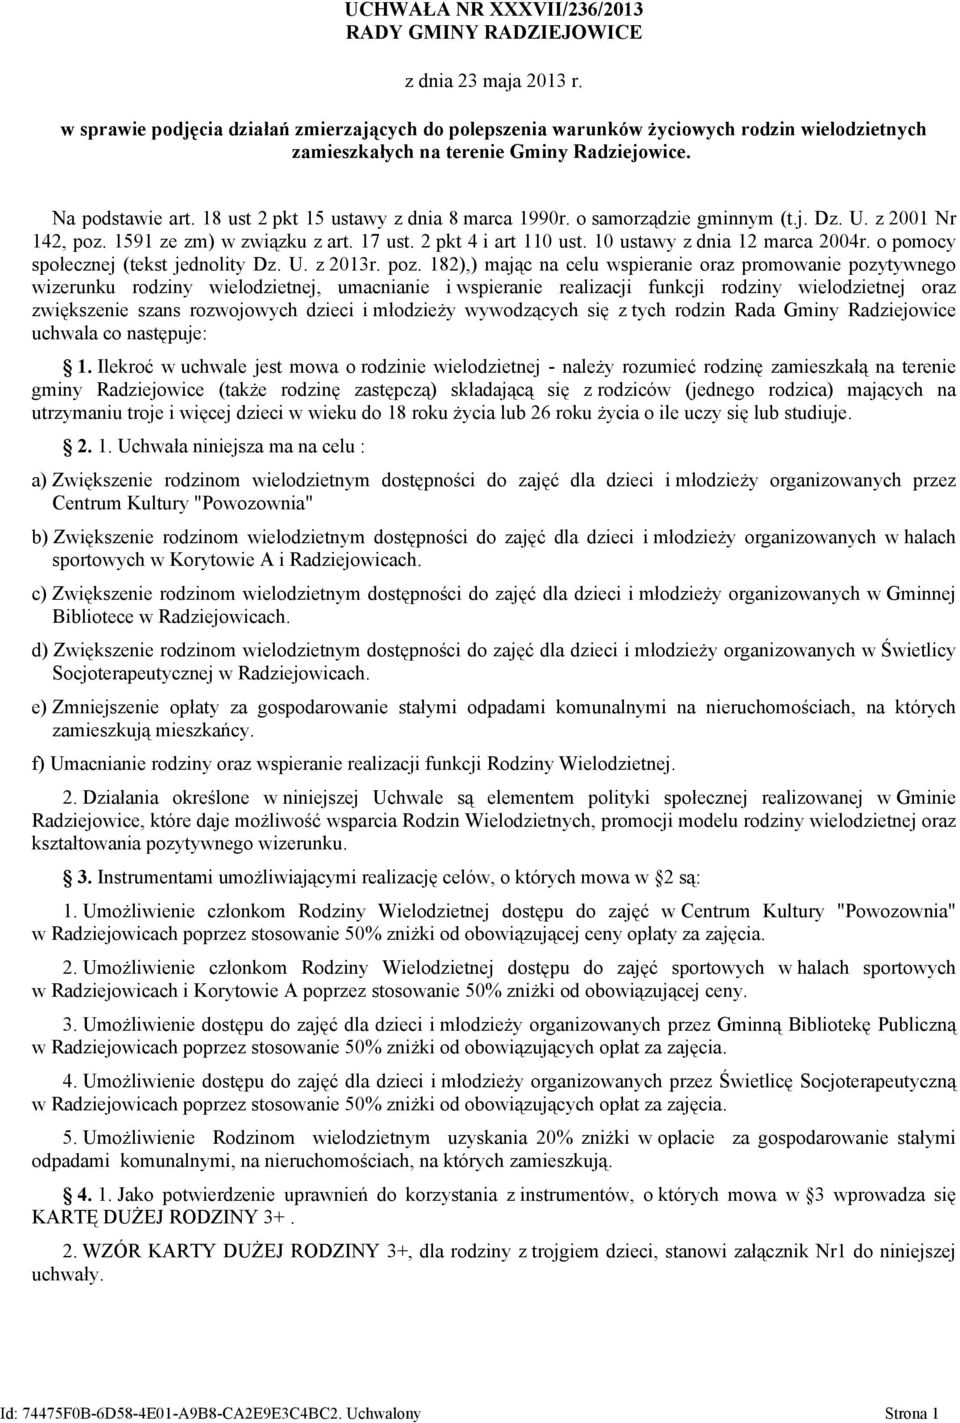 10 ustawy z dnia 12 marca 2004r. o pomocy społecznej (tekst jednolity Dz. U. z 2013r. poz.